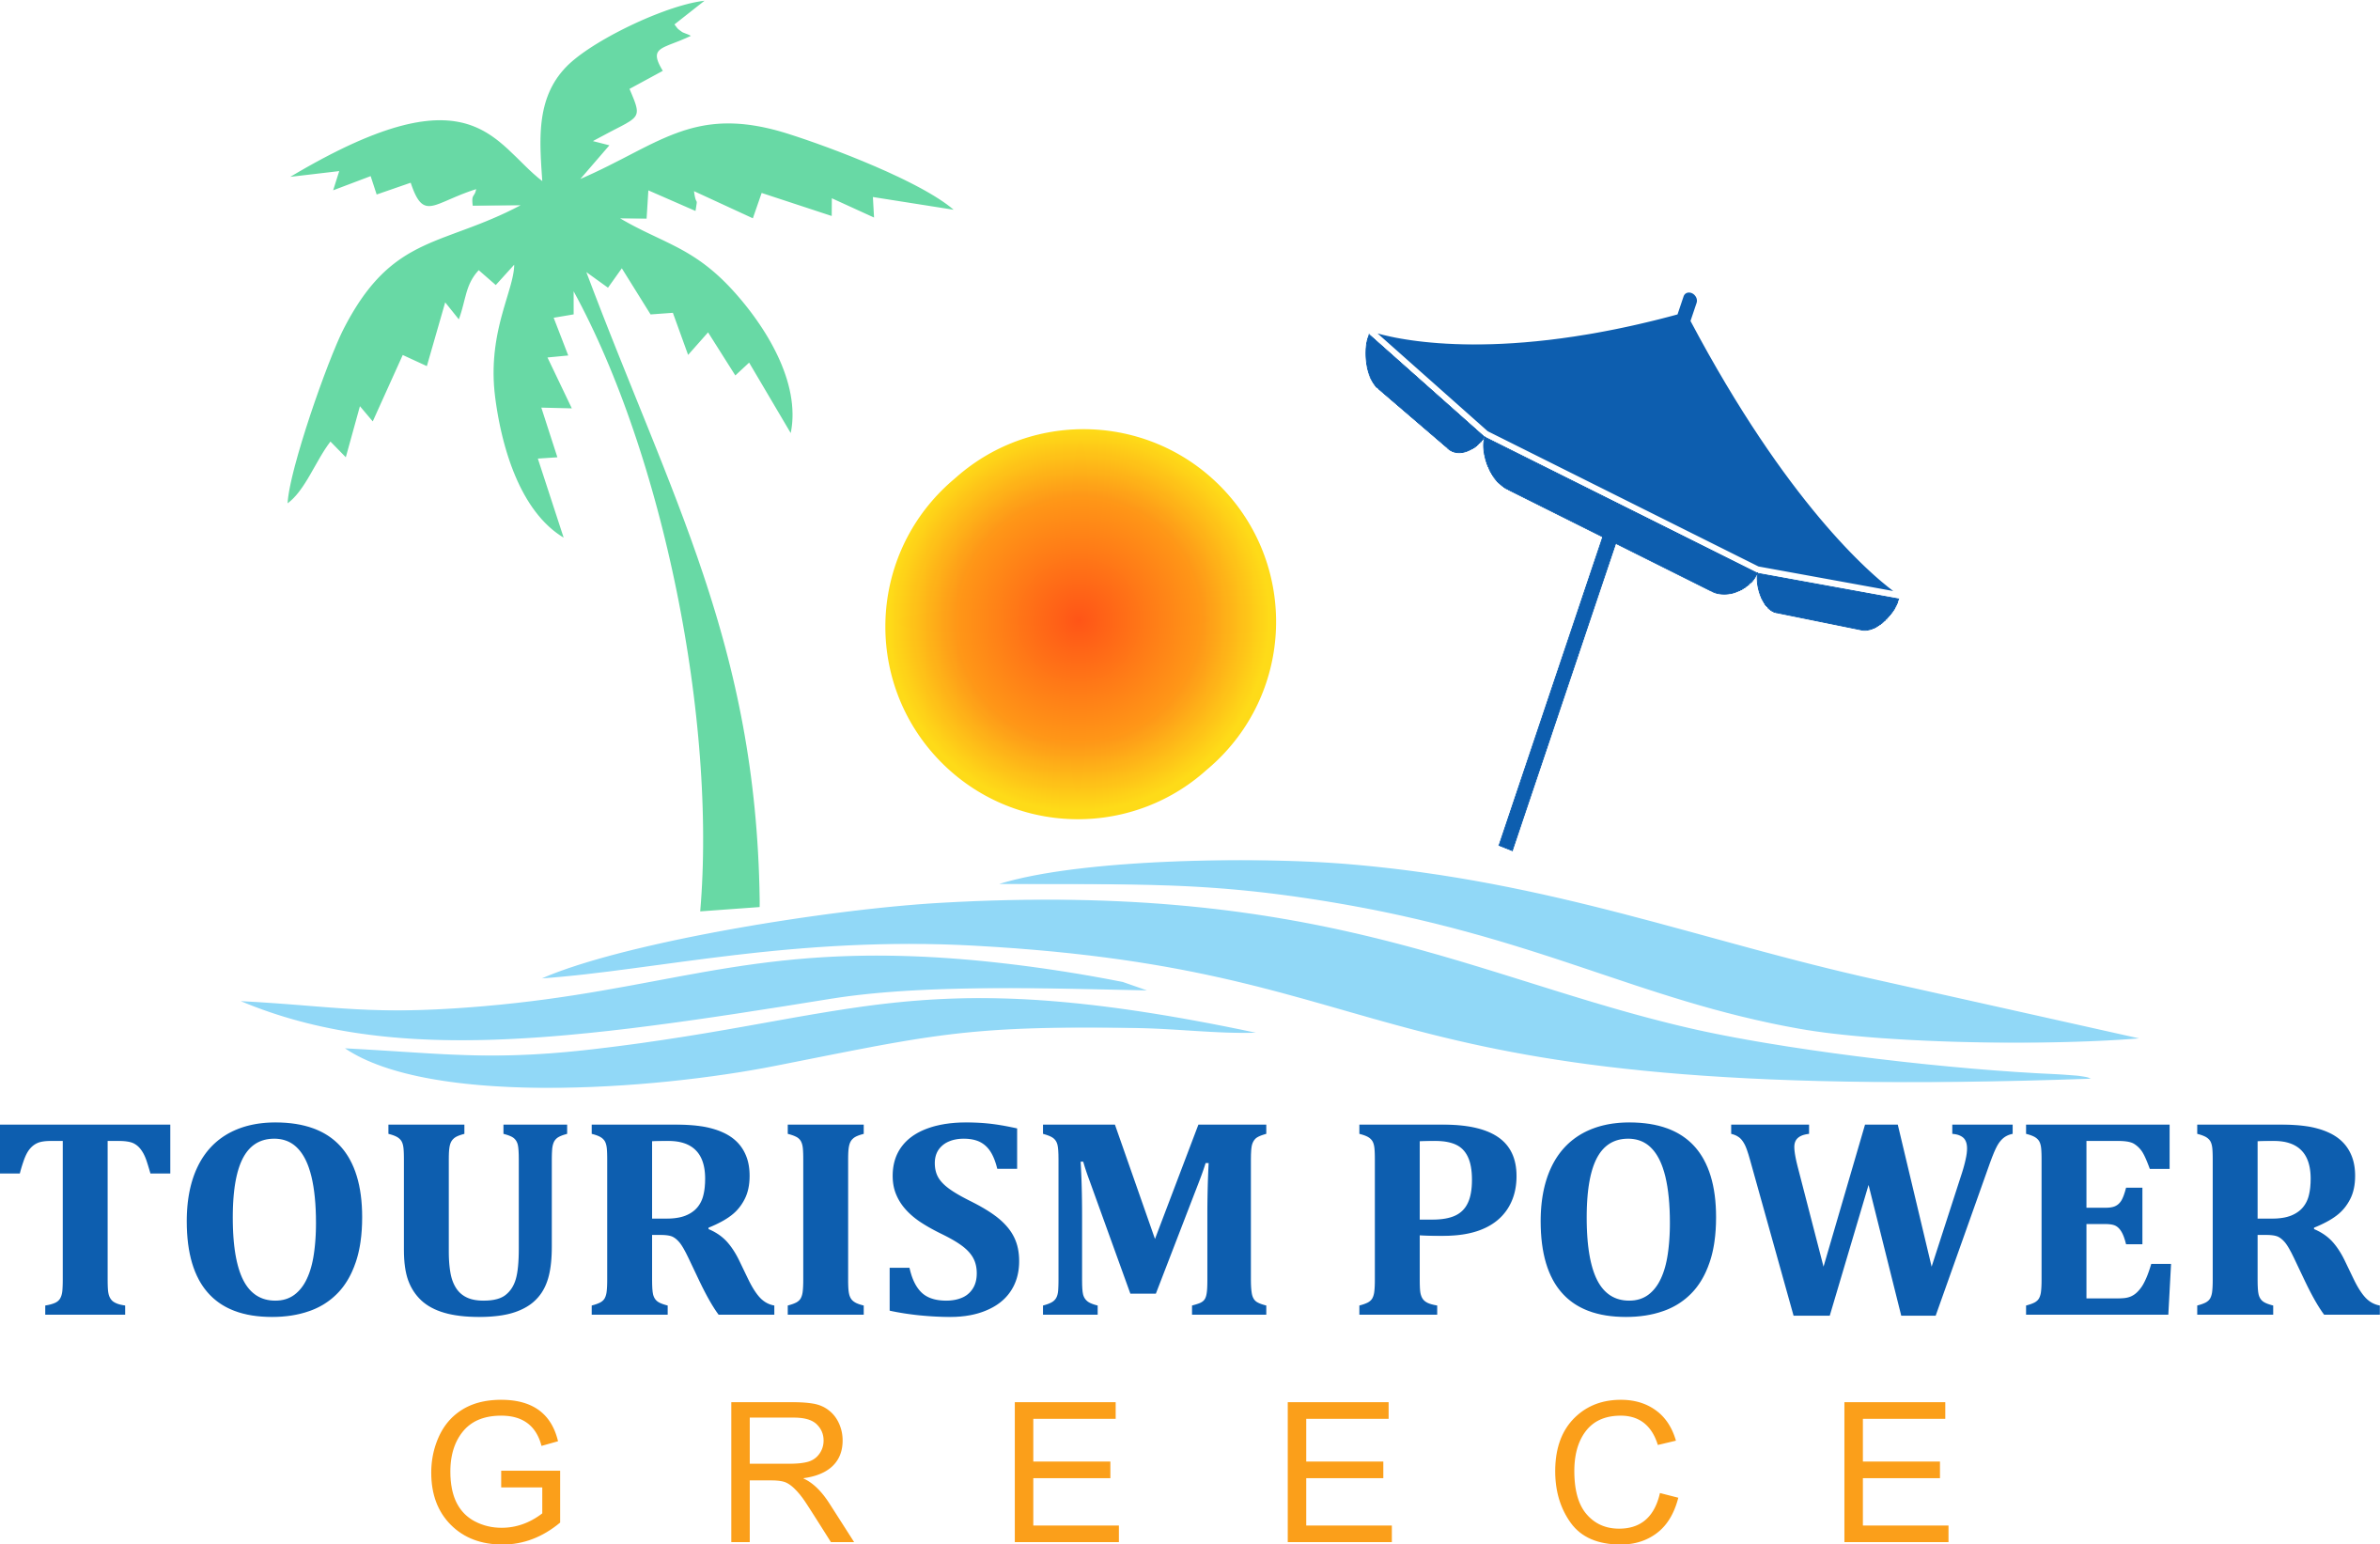 Tourism Power Greece